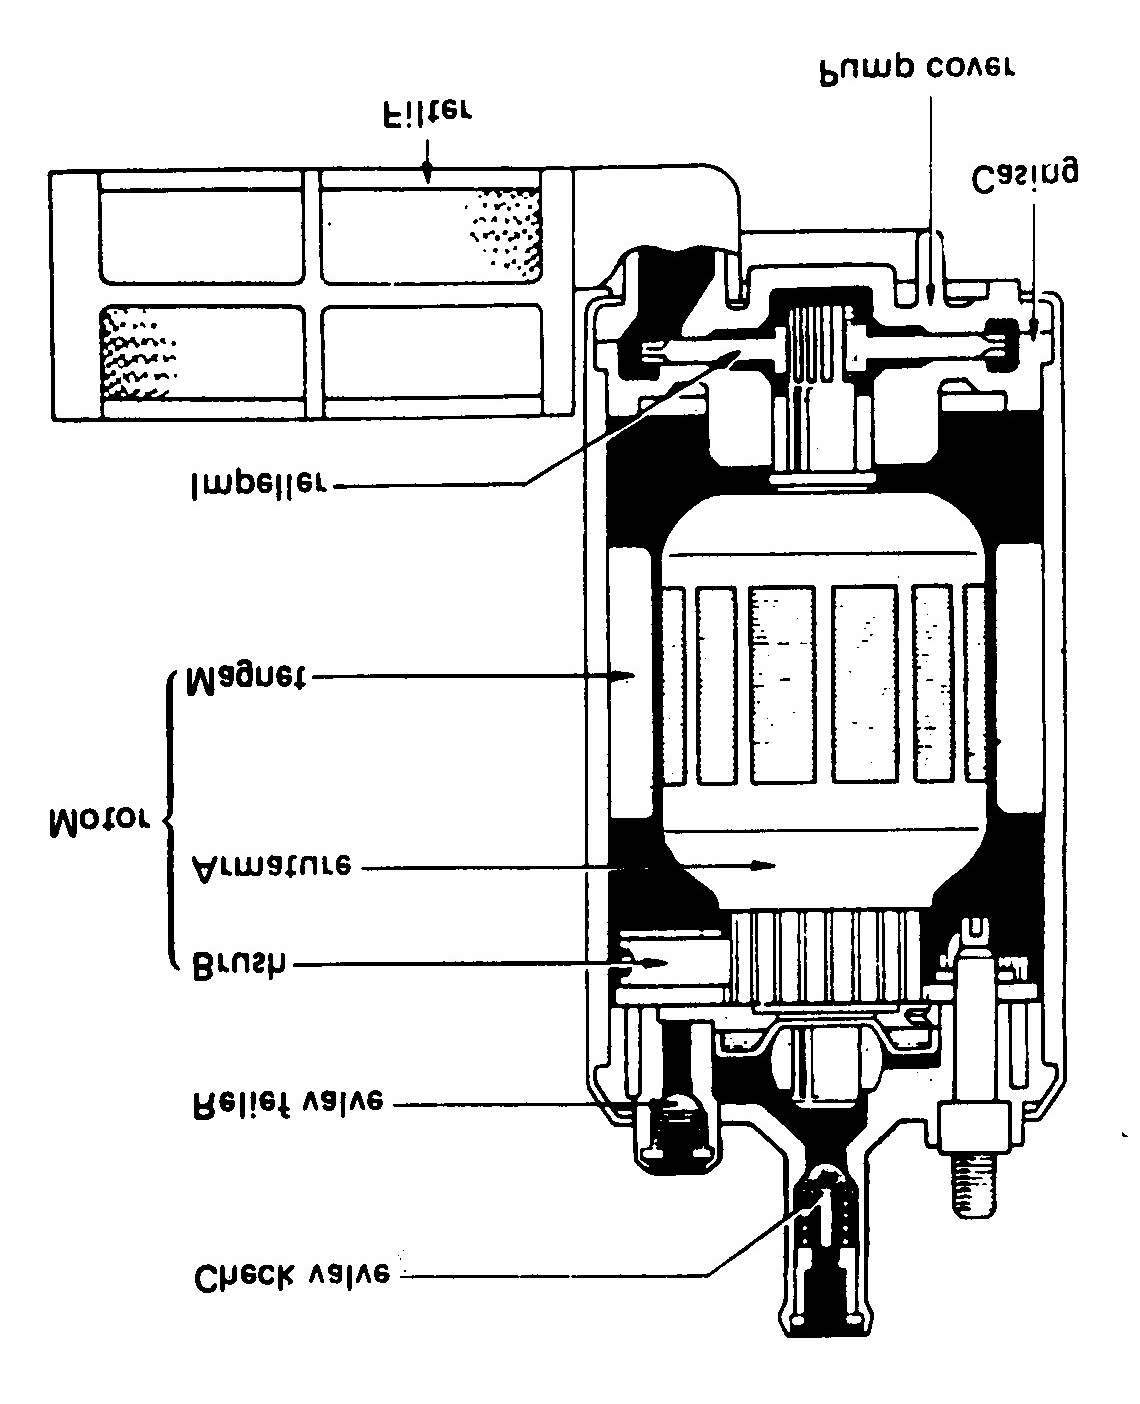 Casing dan pump cover tersusun menjadi satu unit, sehingga apabila motor berputar maka impeller akan ikut berputar.